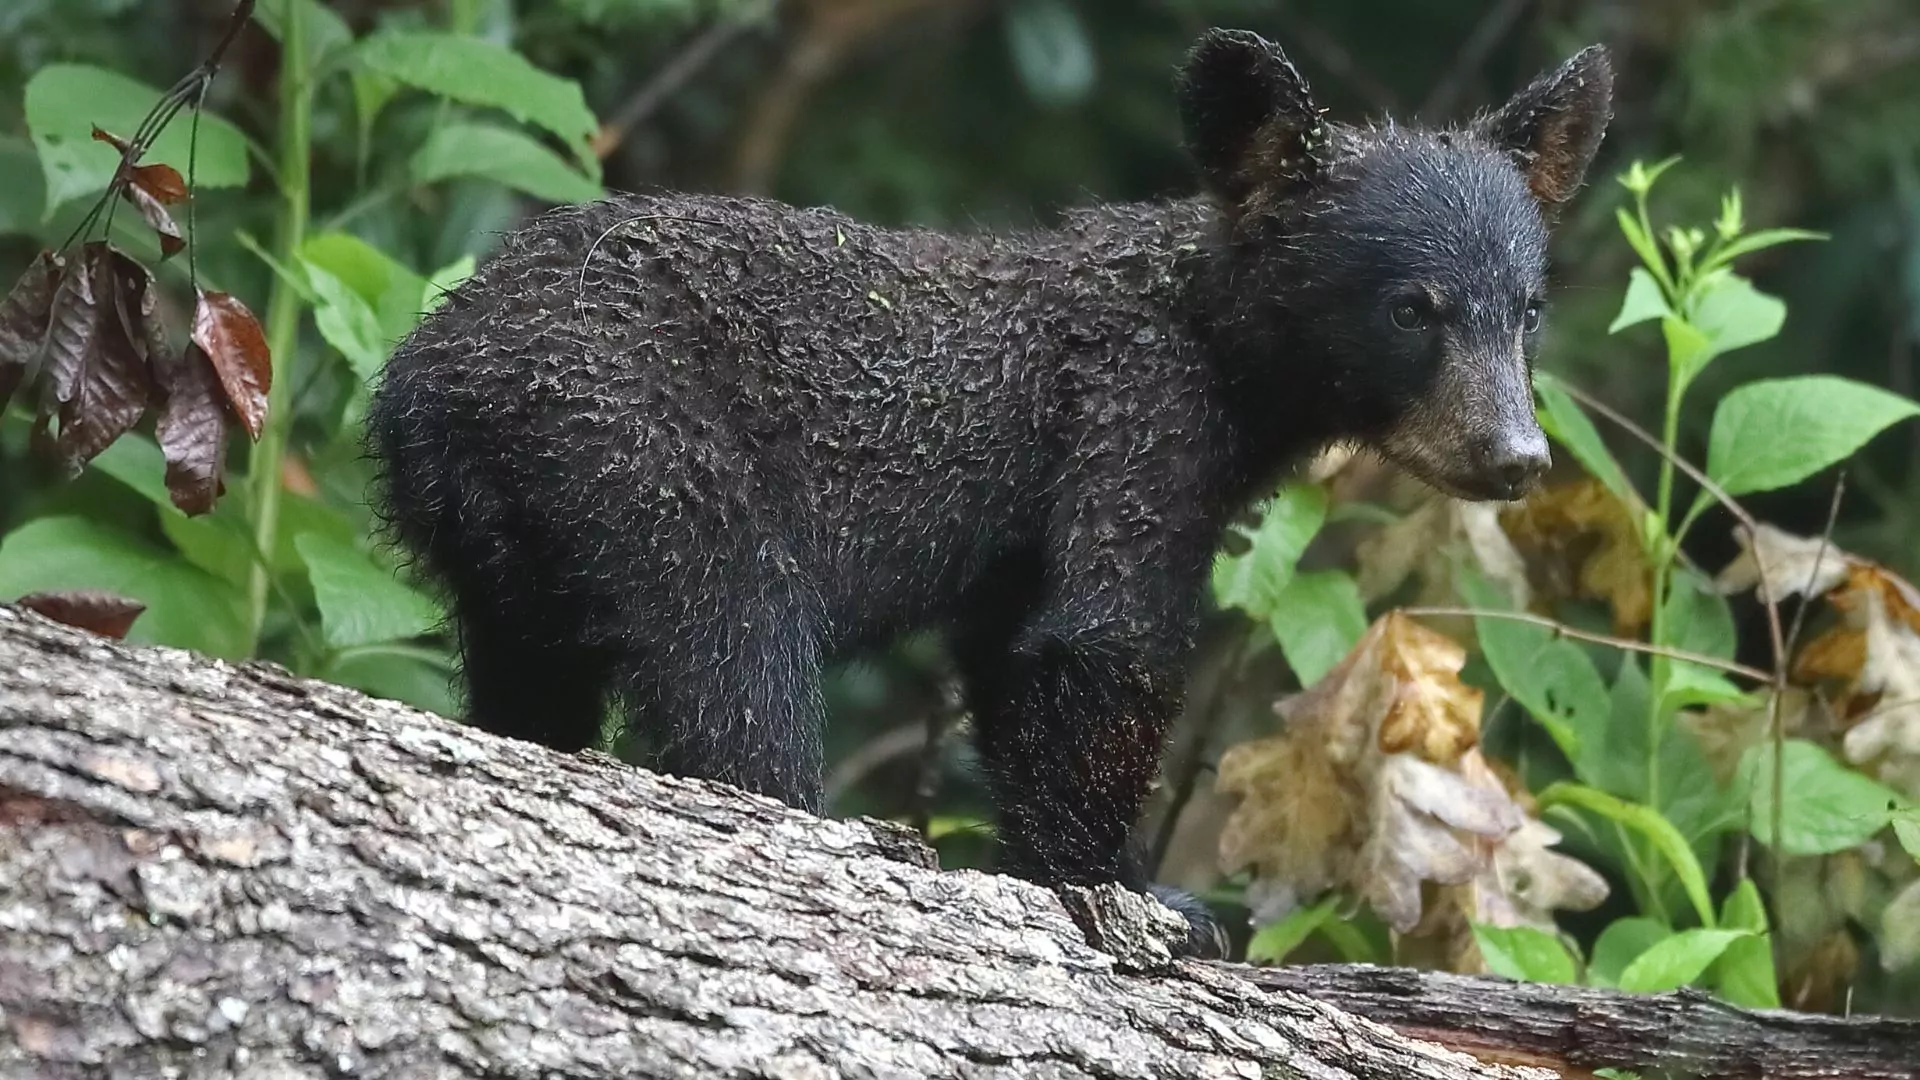 A black bear but climbs on a fallen log among the green forest growth